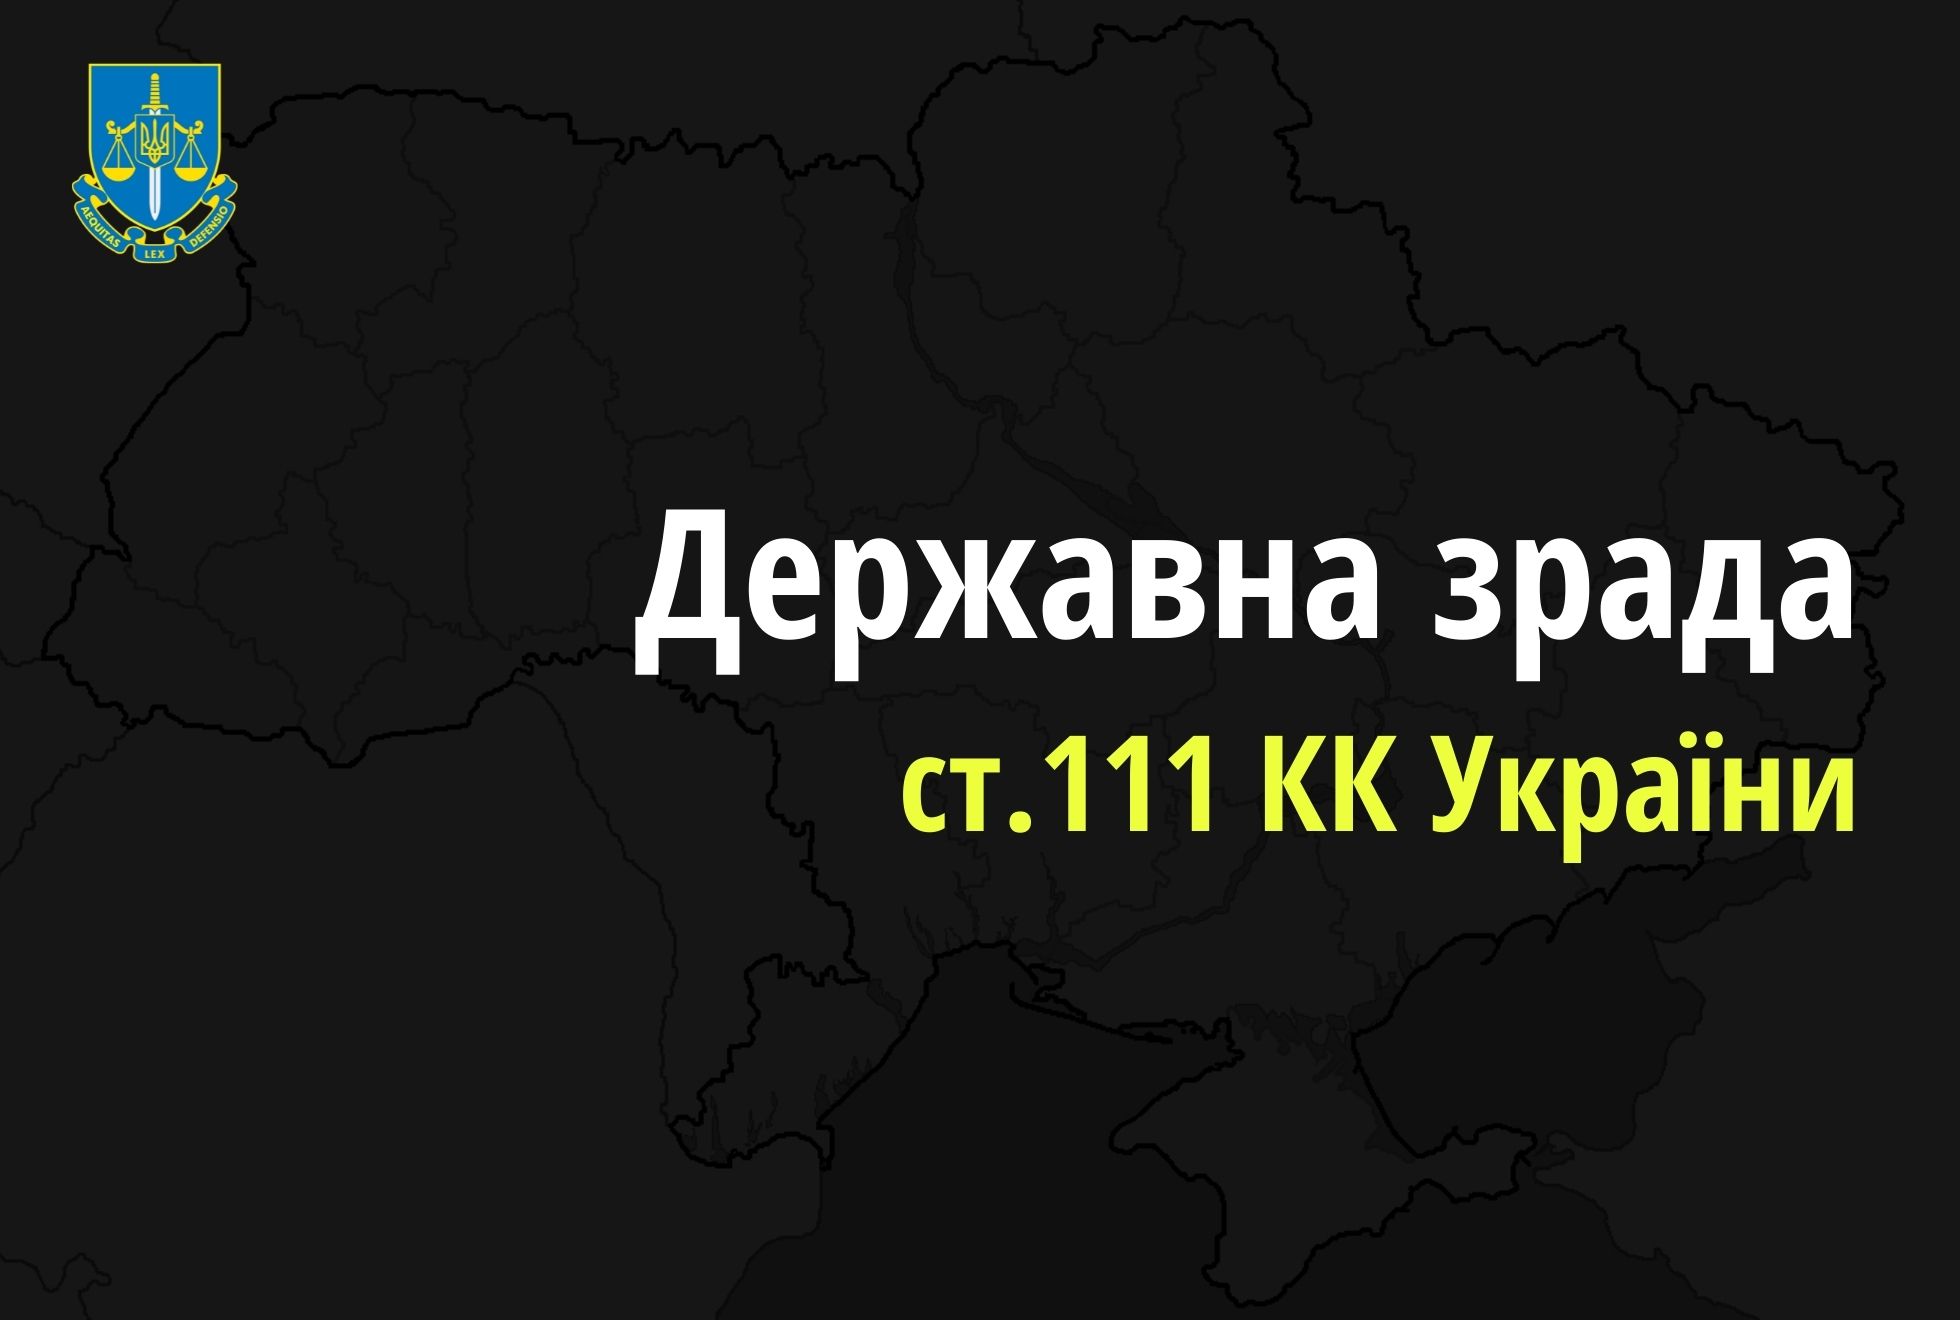 Засуджено ще чотирьох окупаційних суддів-зрадників з Криму